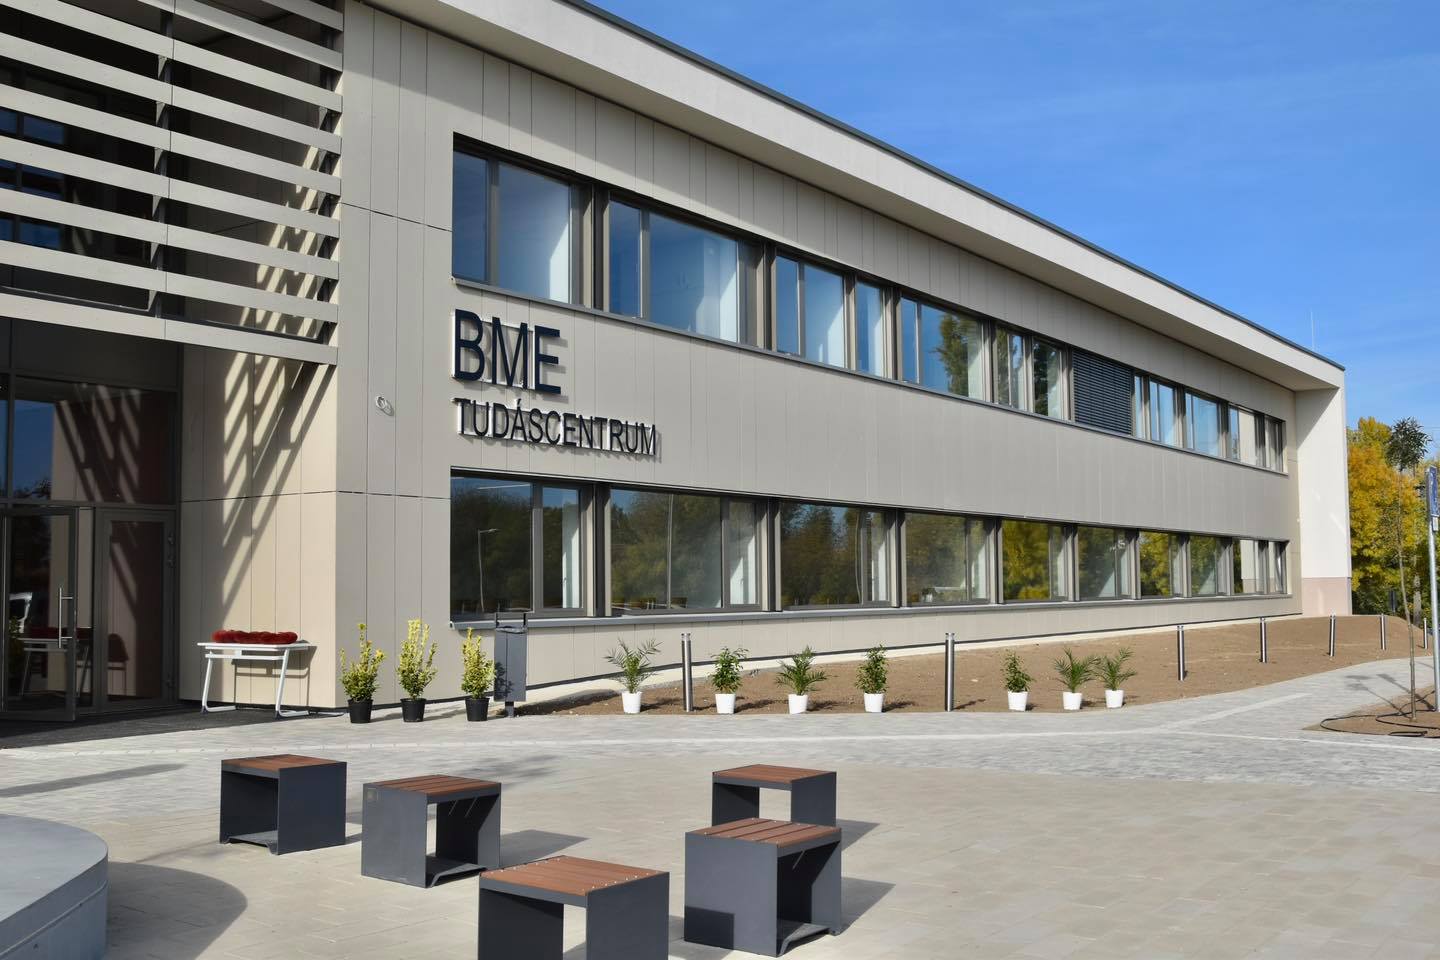 Elkészült a BME Balatonfüredi Tudáscentrum